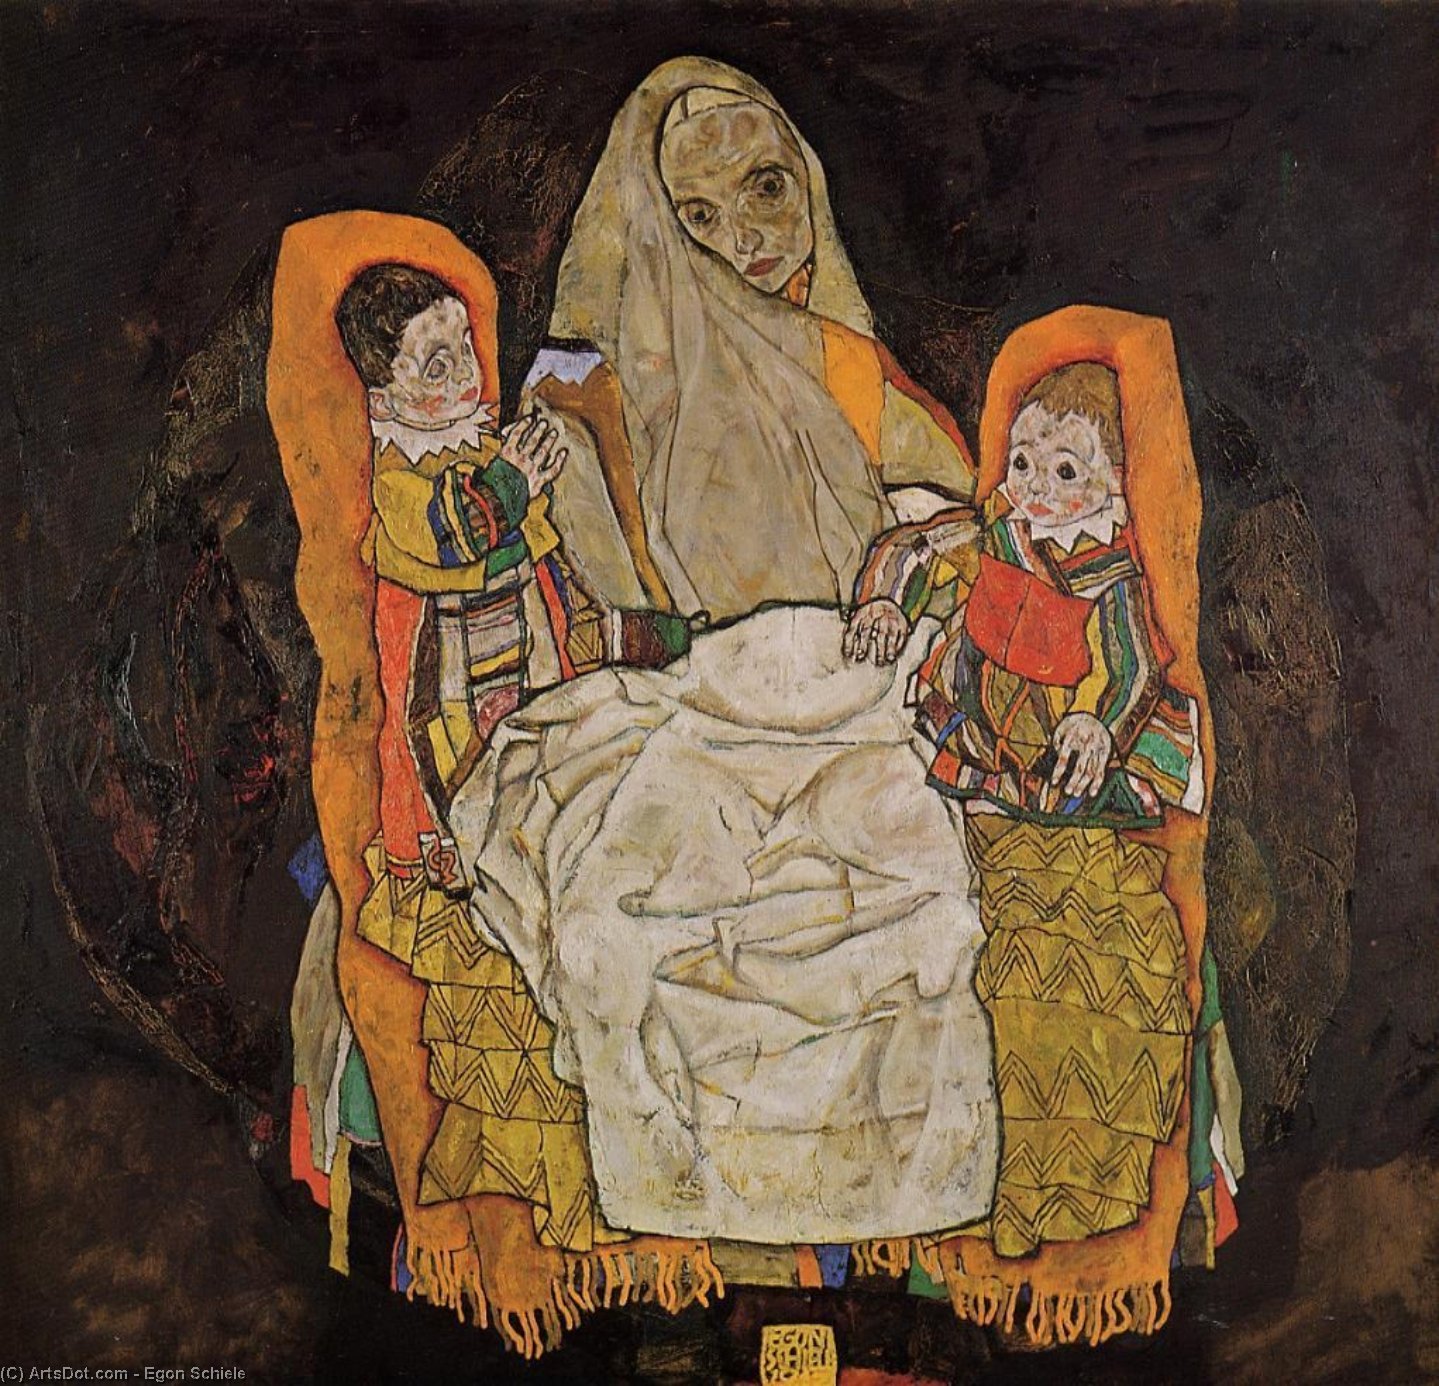 Compre Museu De Reproduções De Arte Mãe com dois filhos, 1917 por Egon Schiele (1890-1918, Croatia) | ArtsDot.com